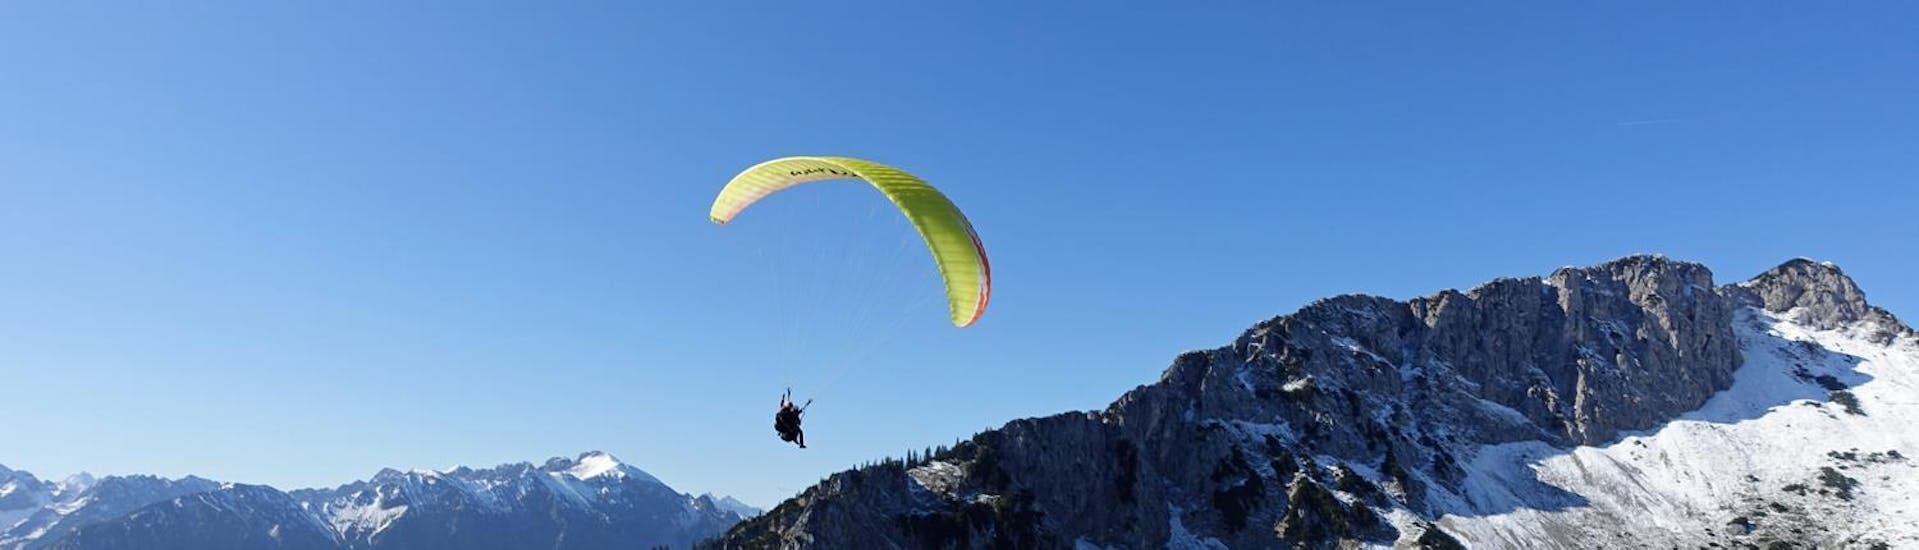 Beim Tandem Paragliding "Streckenflug" im Allgäu und in Tirol schwebt ein Gleitschirm von FlyTeam hoch über den Bergen.